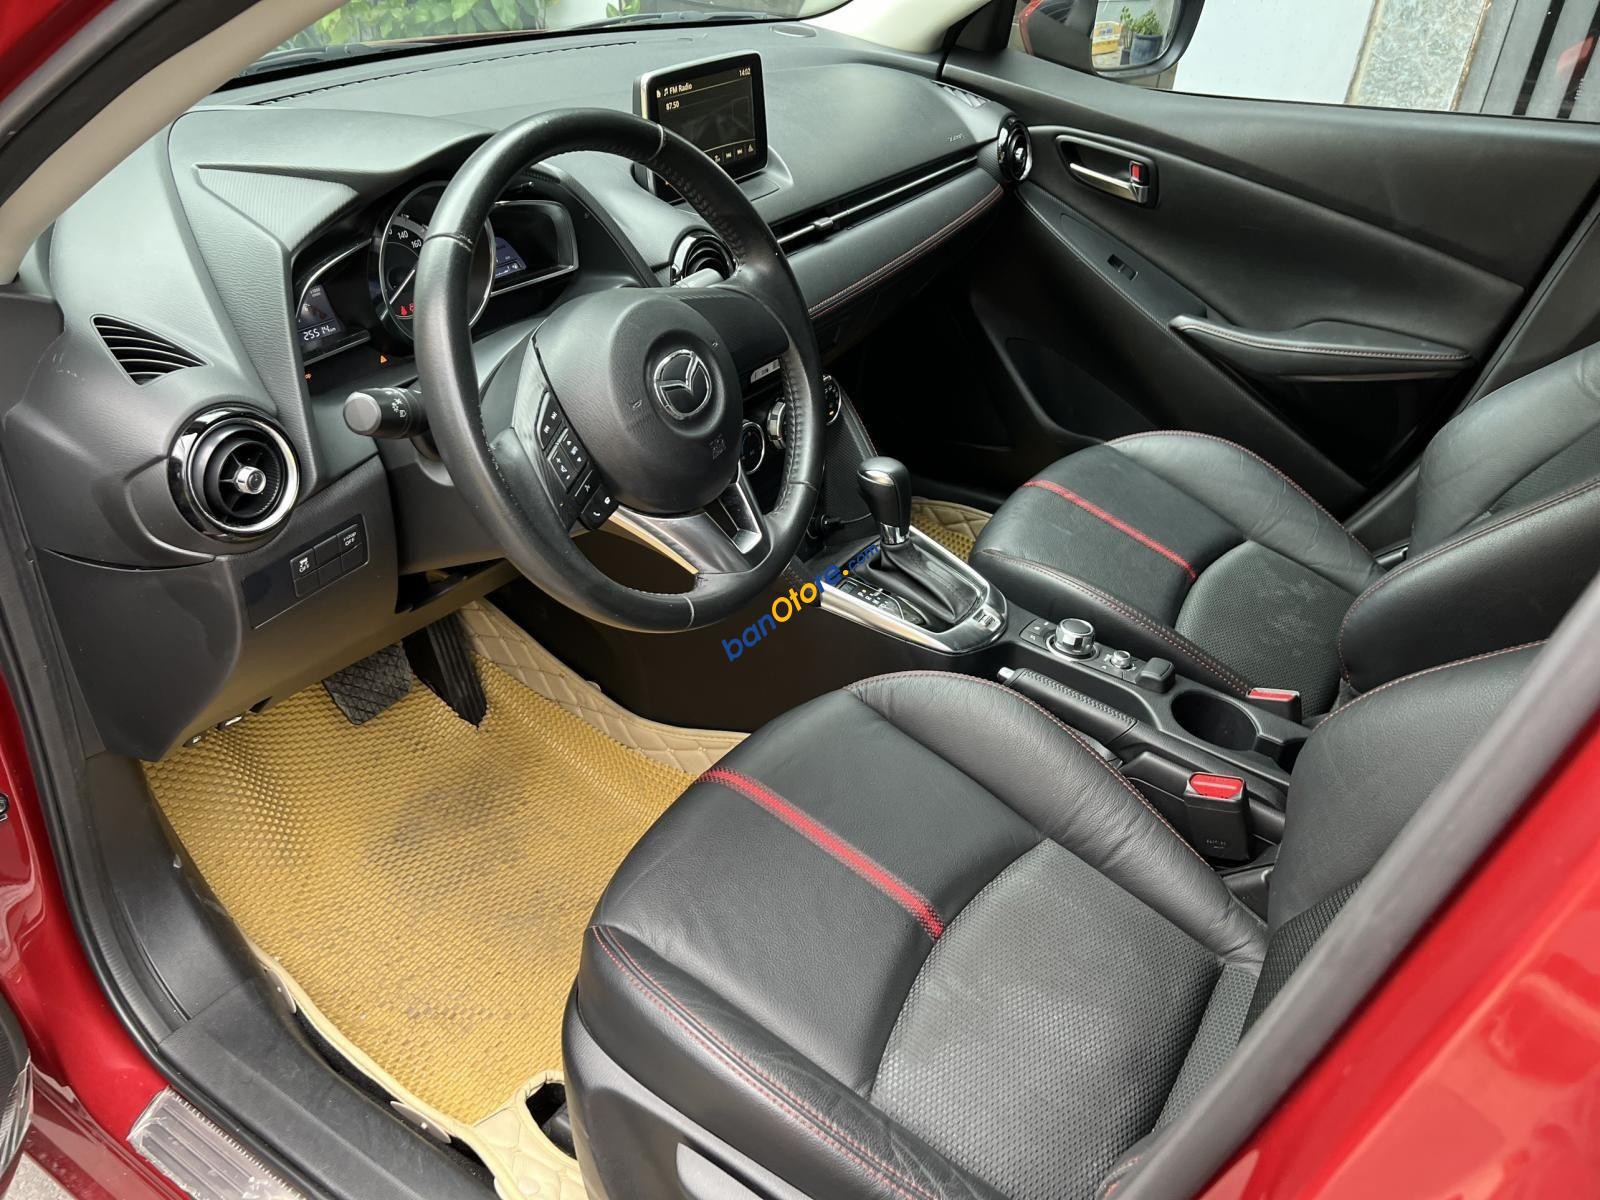 Mazda 2 2018 - Cần bán xe model 2019, số tự động, màu đỏ mới